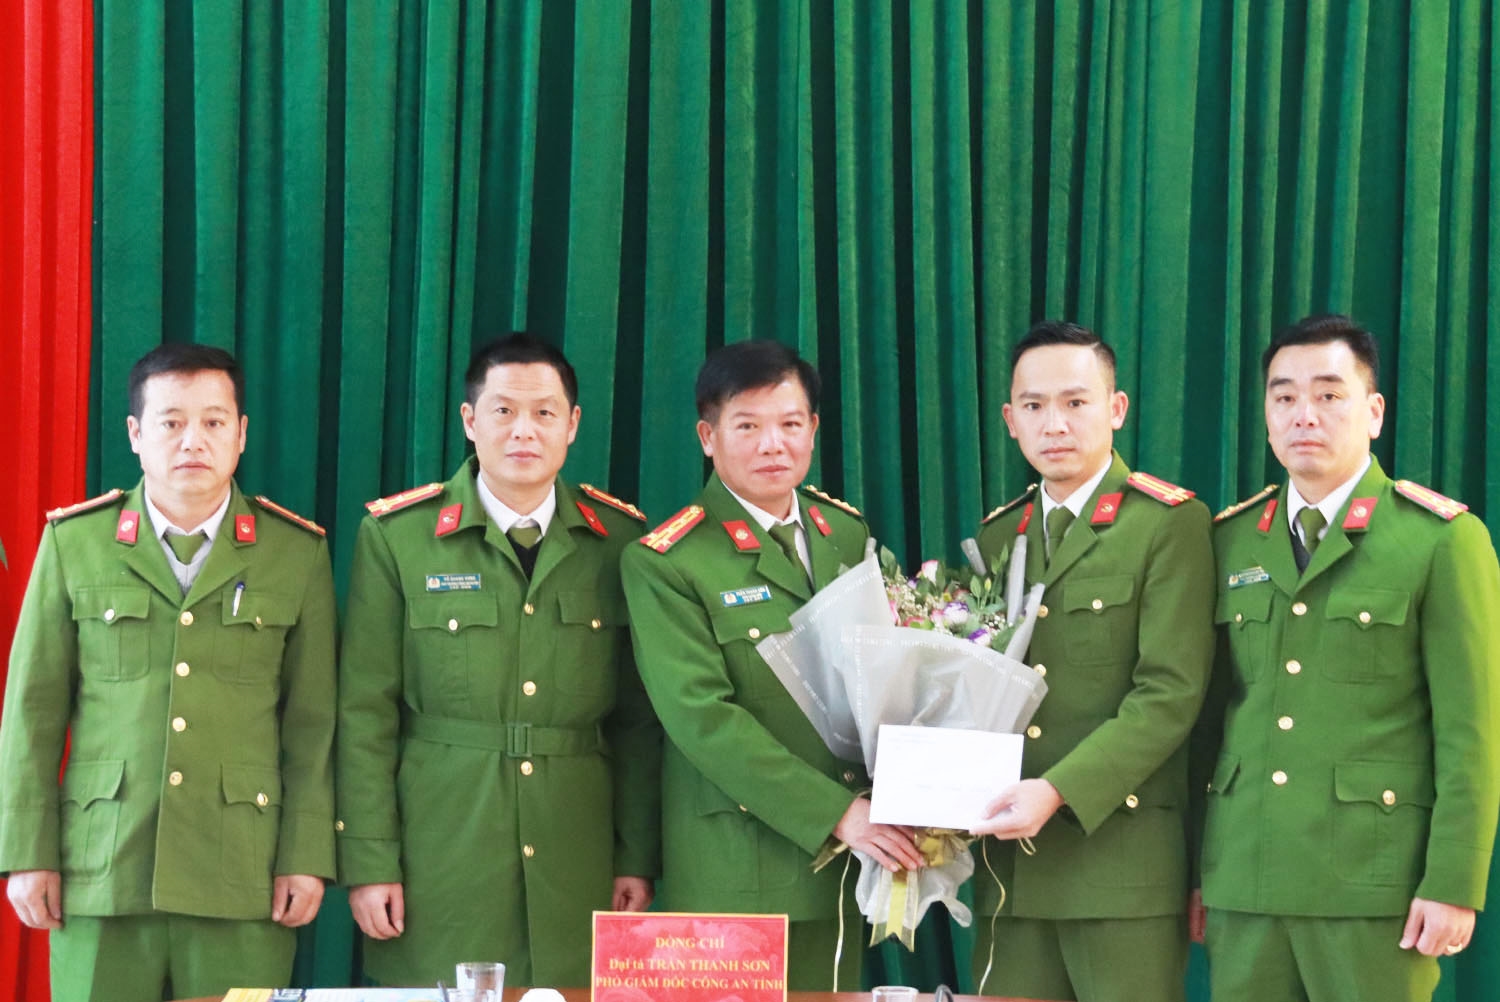  Lãnh đạo Công an tỉnh Sơn La khen thưởng đột xuất cho Ban Chuyên án và các tập thể, cá nhân